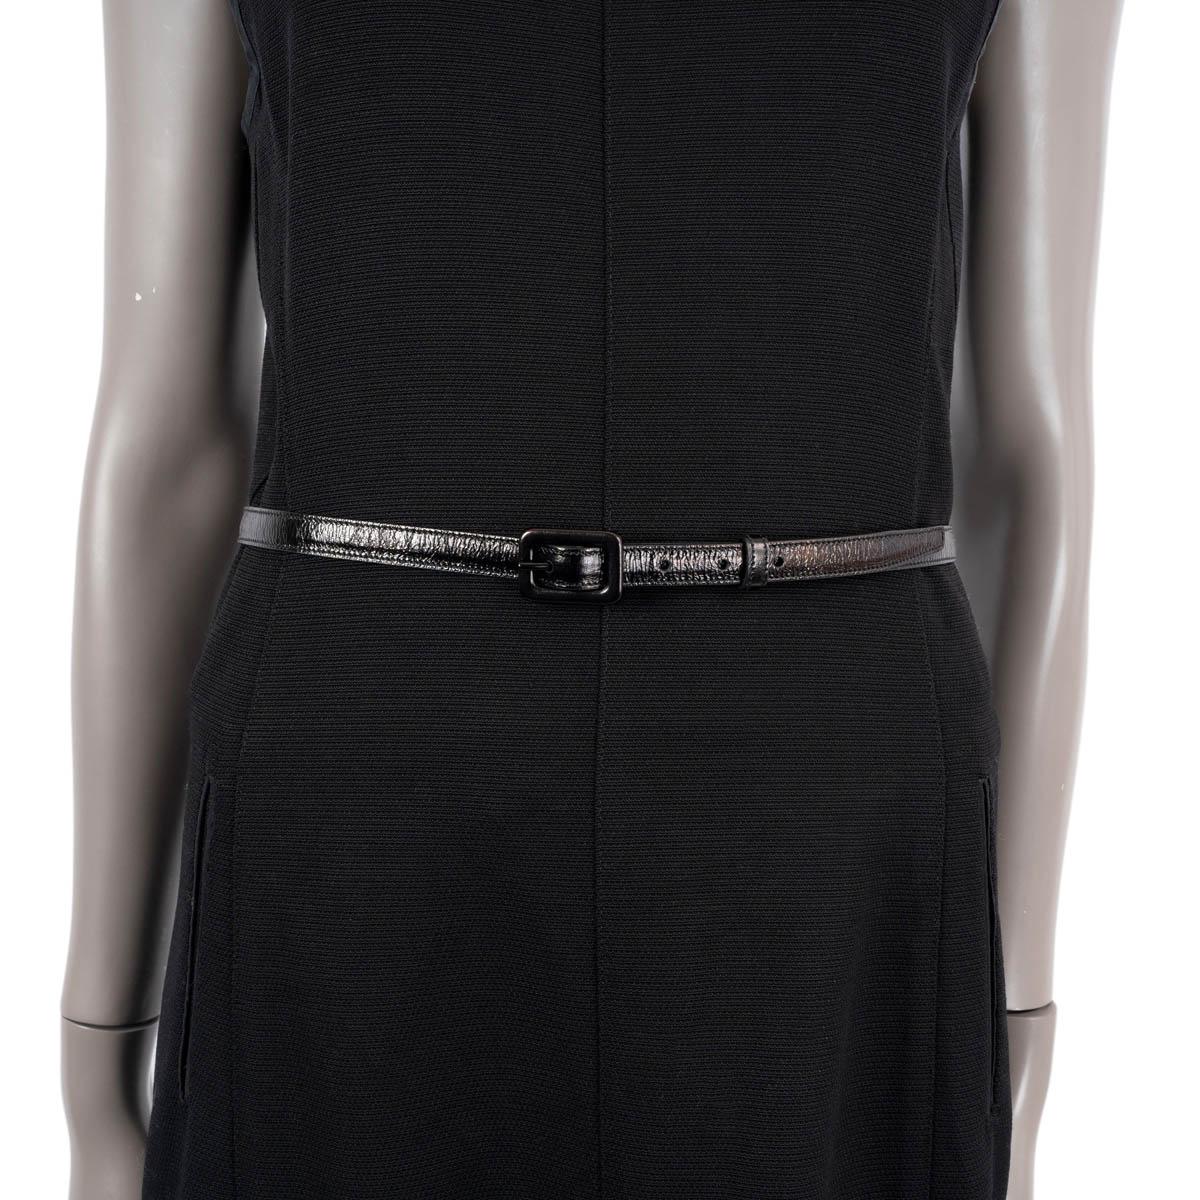 100% authentique Saint Laurent ceinture fine en cuir noir avec une boucle noire. A été porté et est en excellent état.


Mesures
Taille de l'étiquette	80
Largeur	1.3cm (0.5in)
Convient à	75cm (29.3in) à 83cm (32.4in)
Longueur	91cm (35.5in)
Taille de